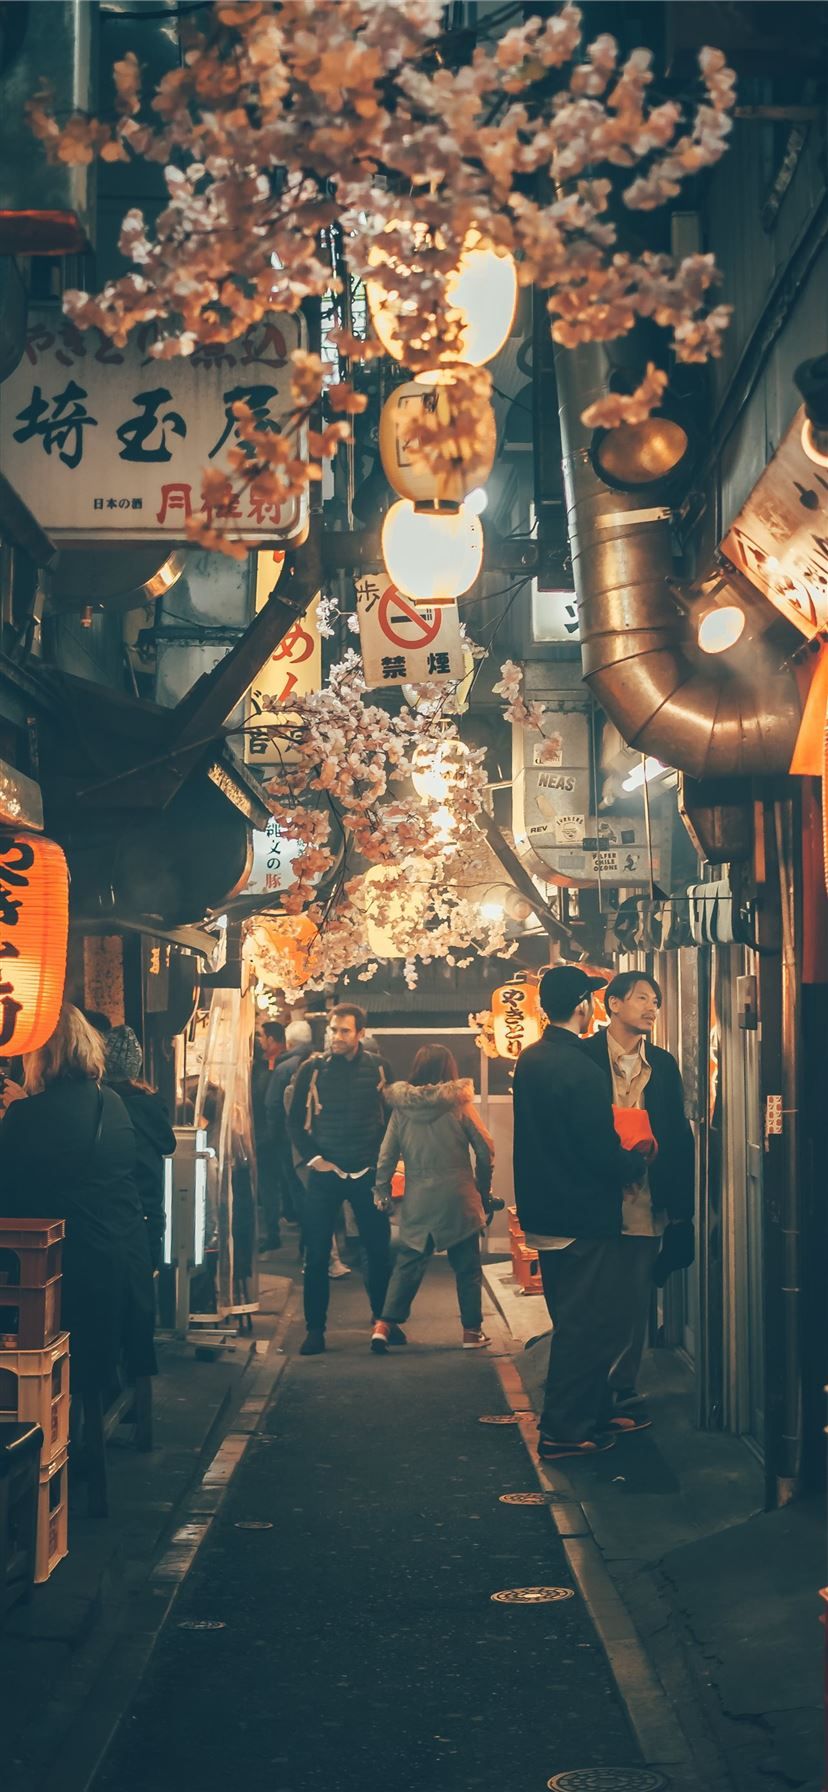 A night scene of a narrow alleyway in Tokyo, Japan - Tokyo, Japan